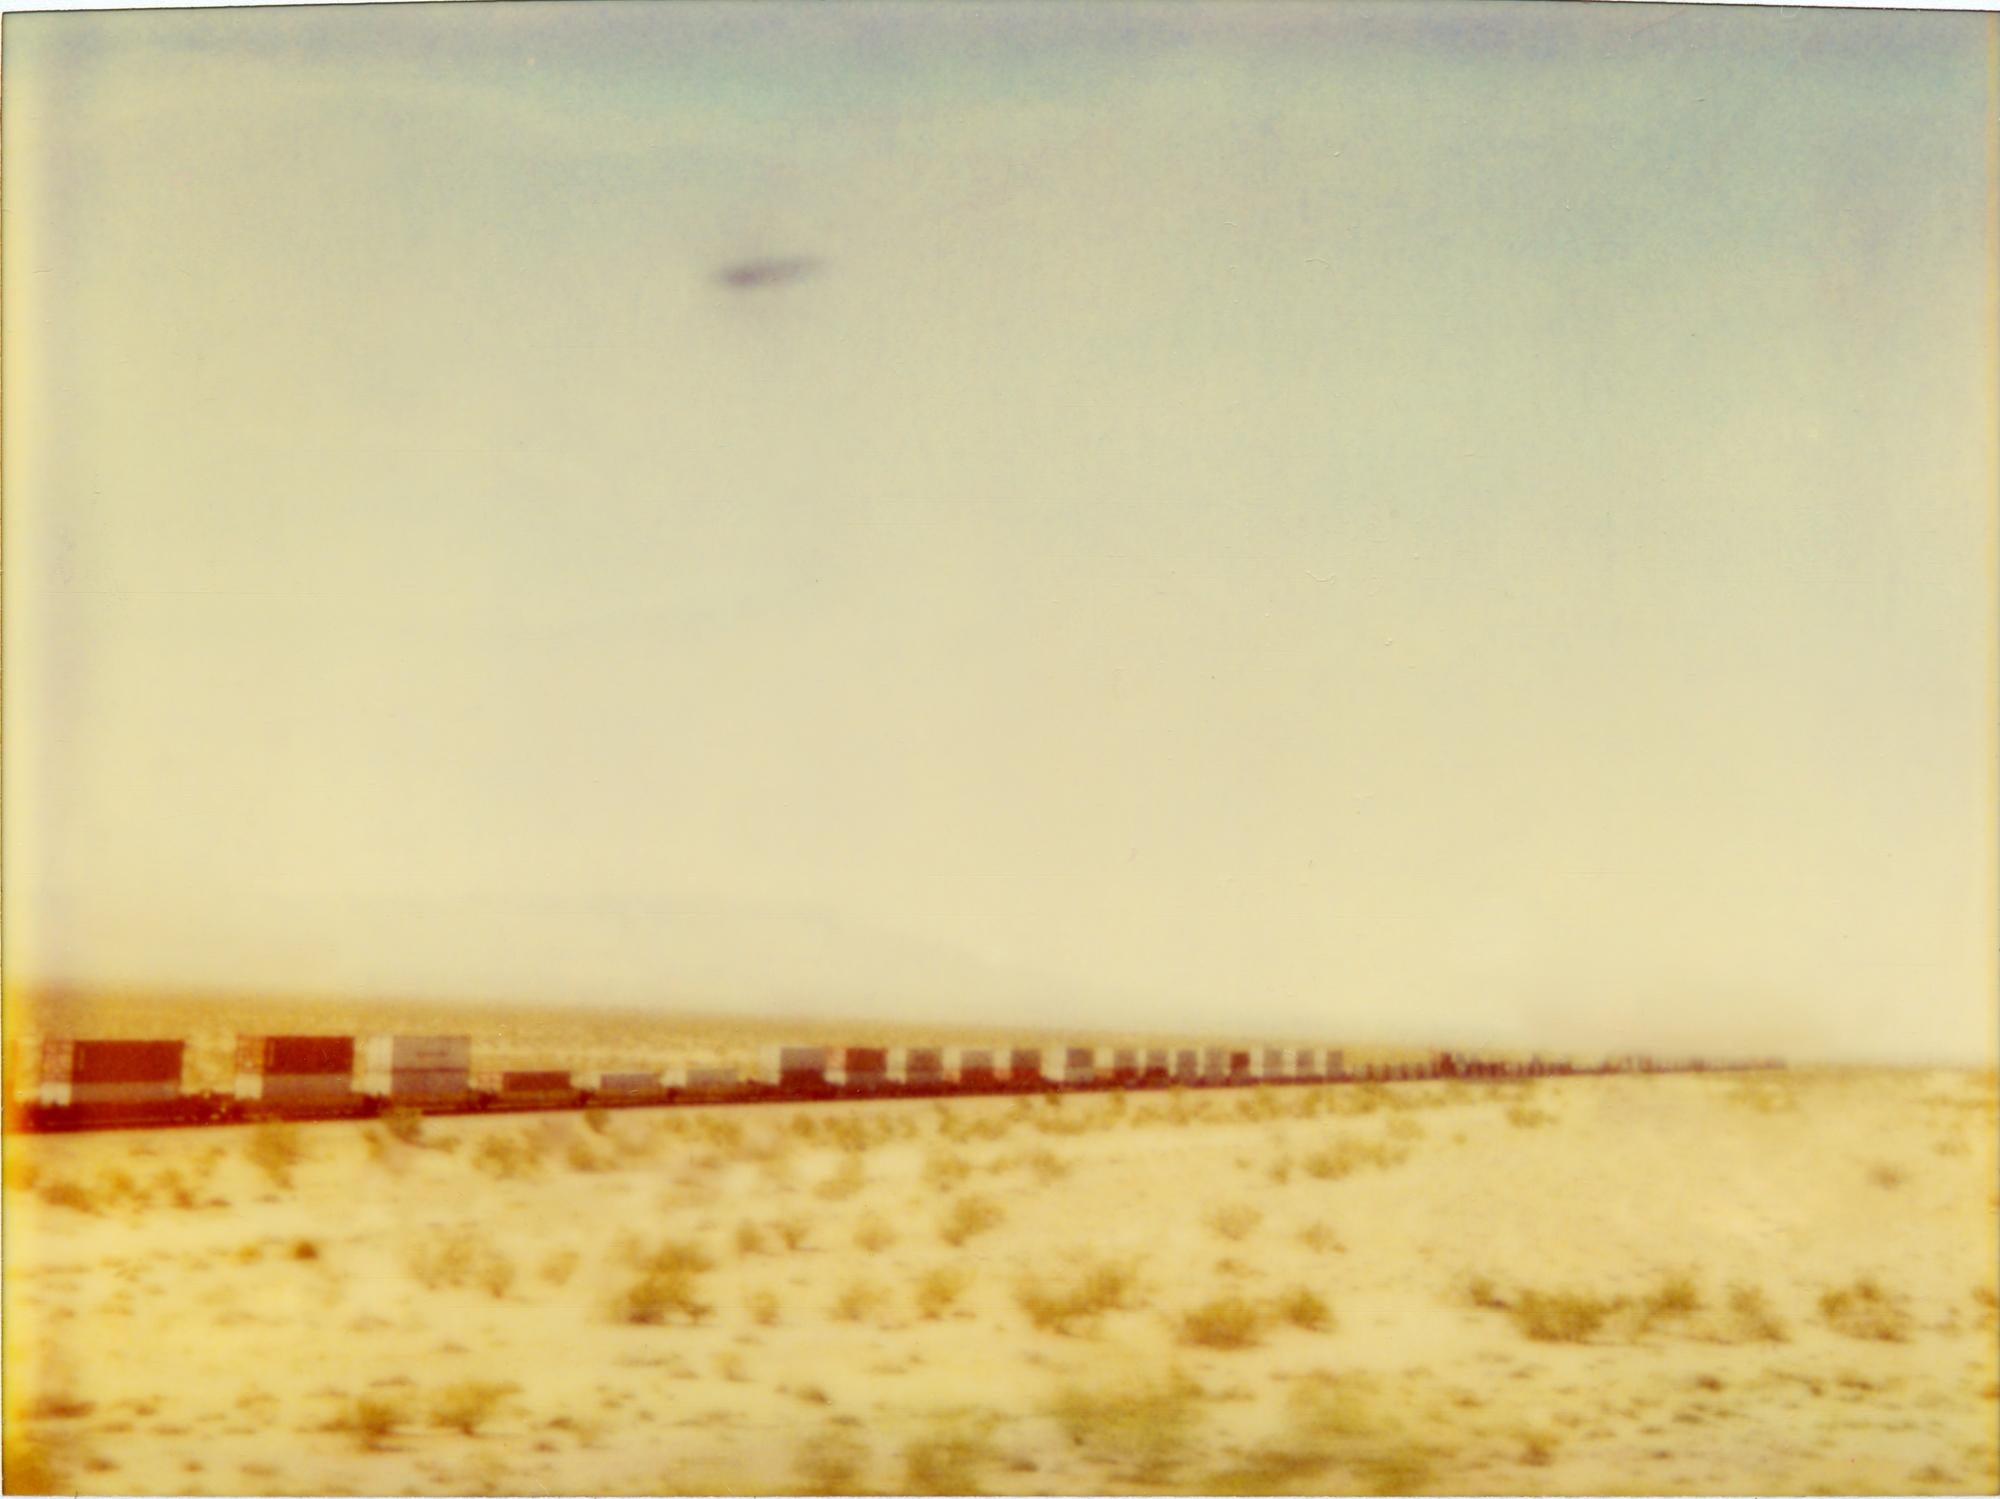 Stefanie Schneider Color Photograph - Train crosses Plain (Wastelands)